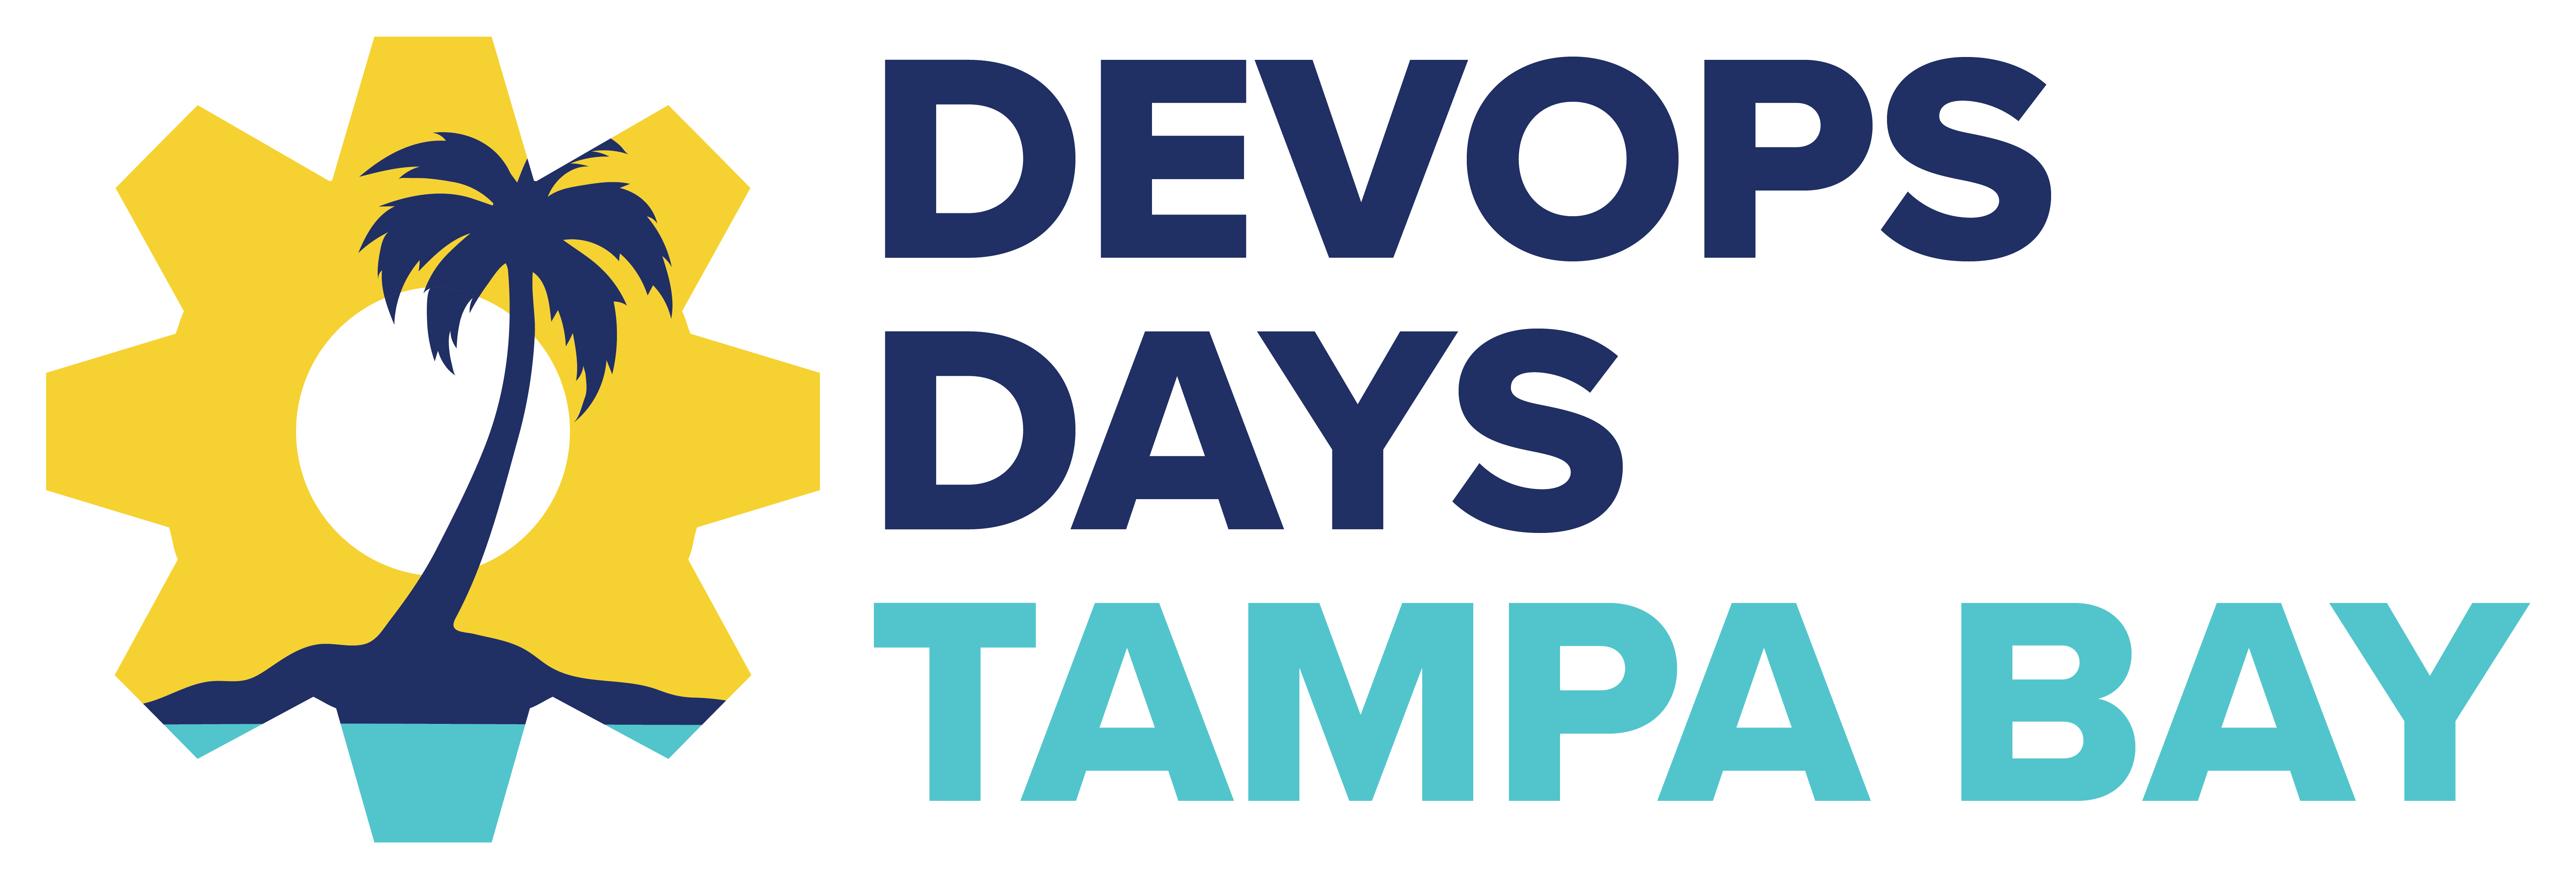 devopsdays Tampa Bay 2019